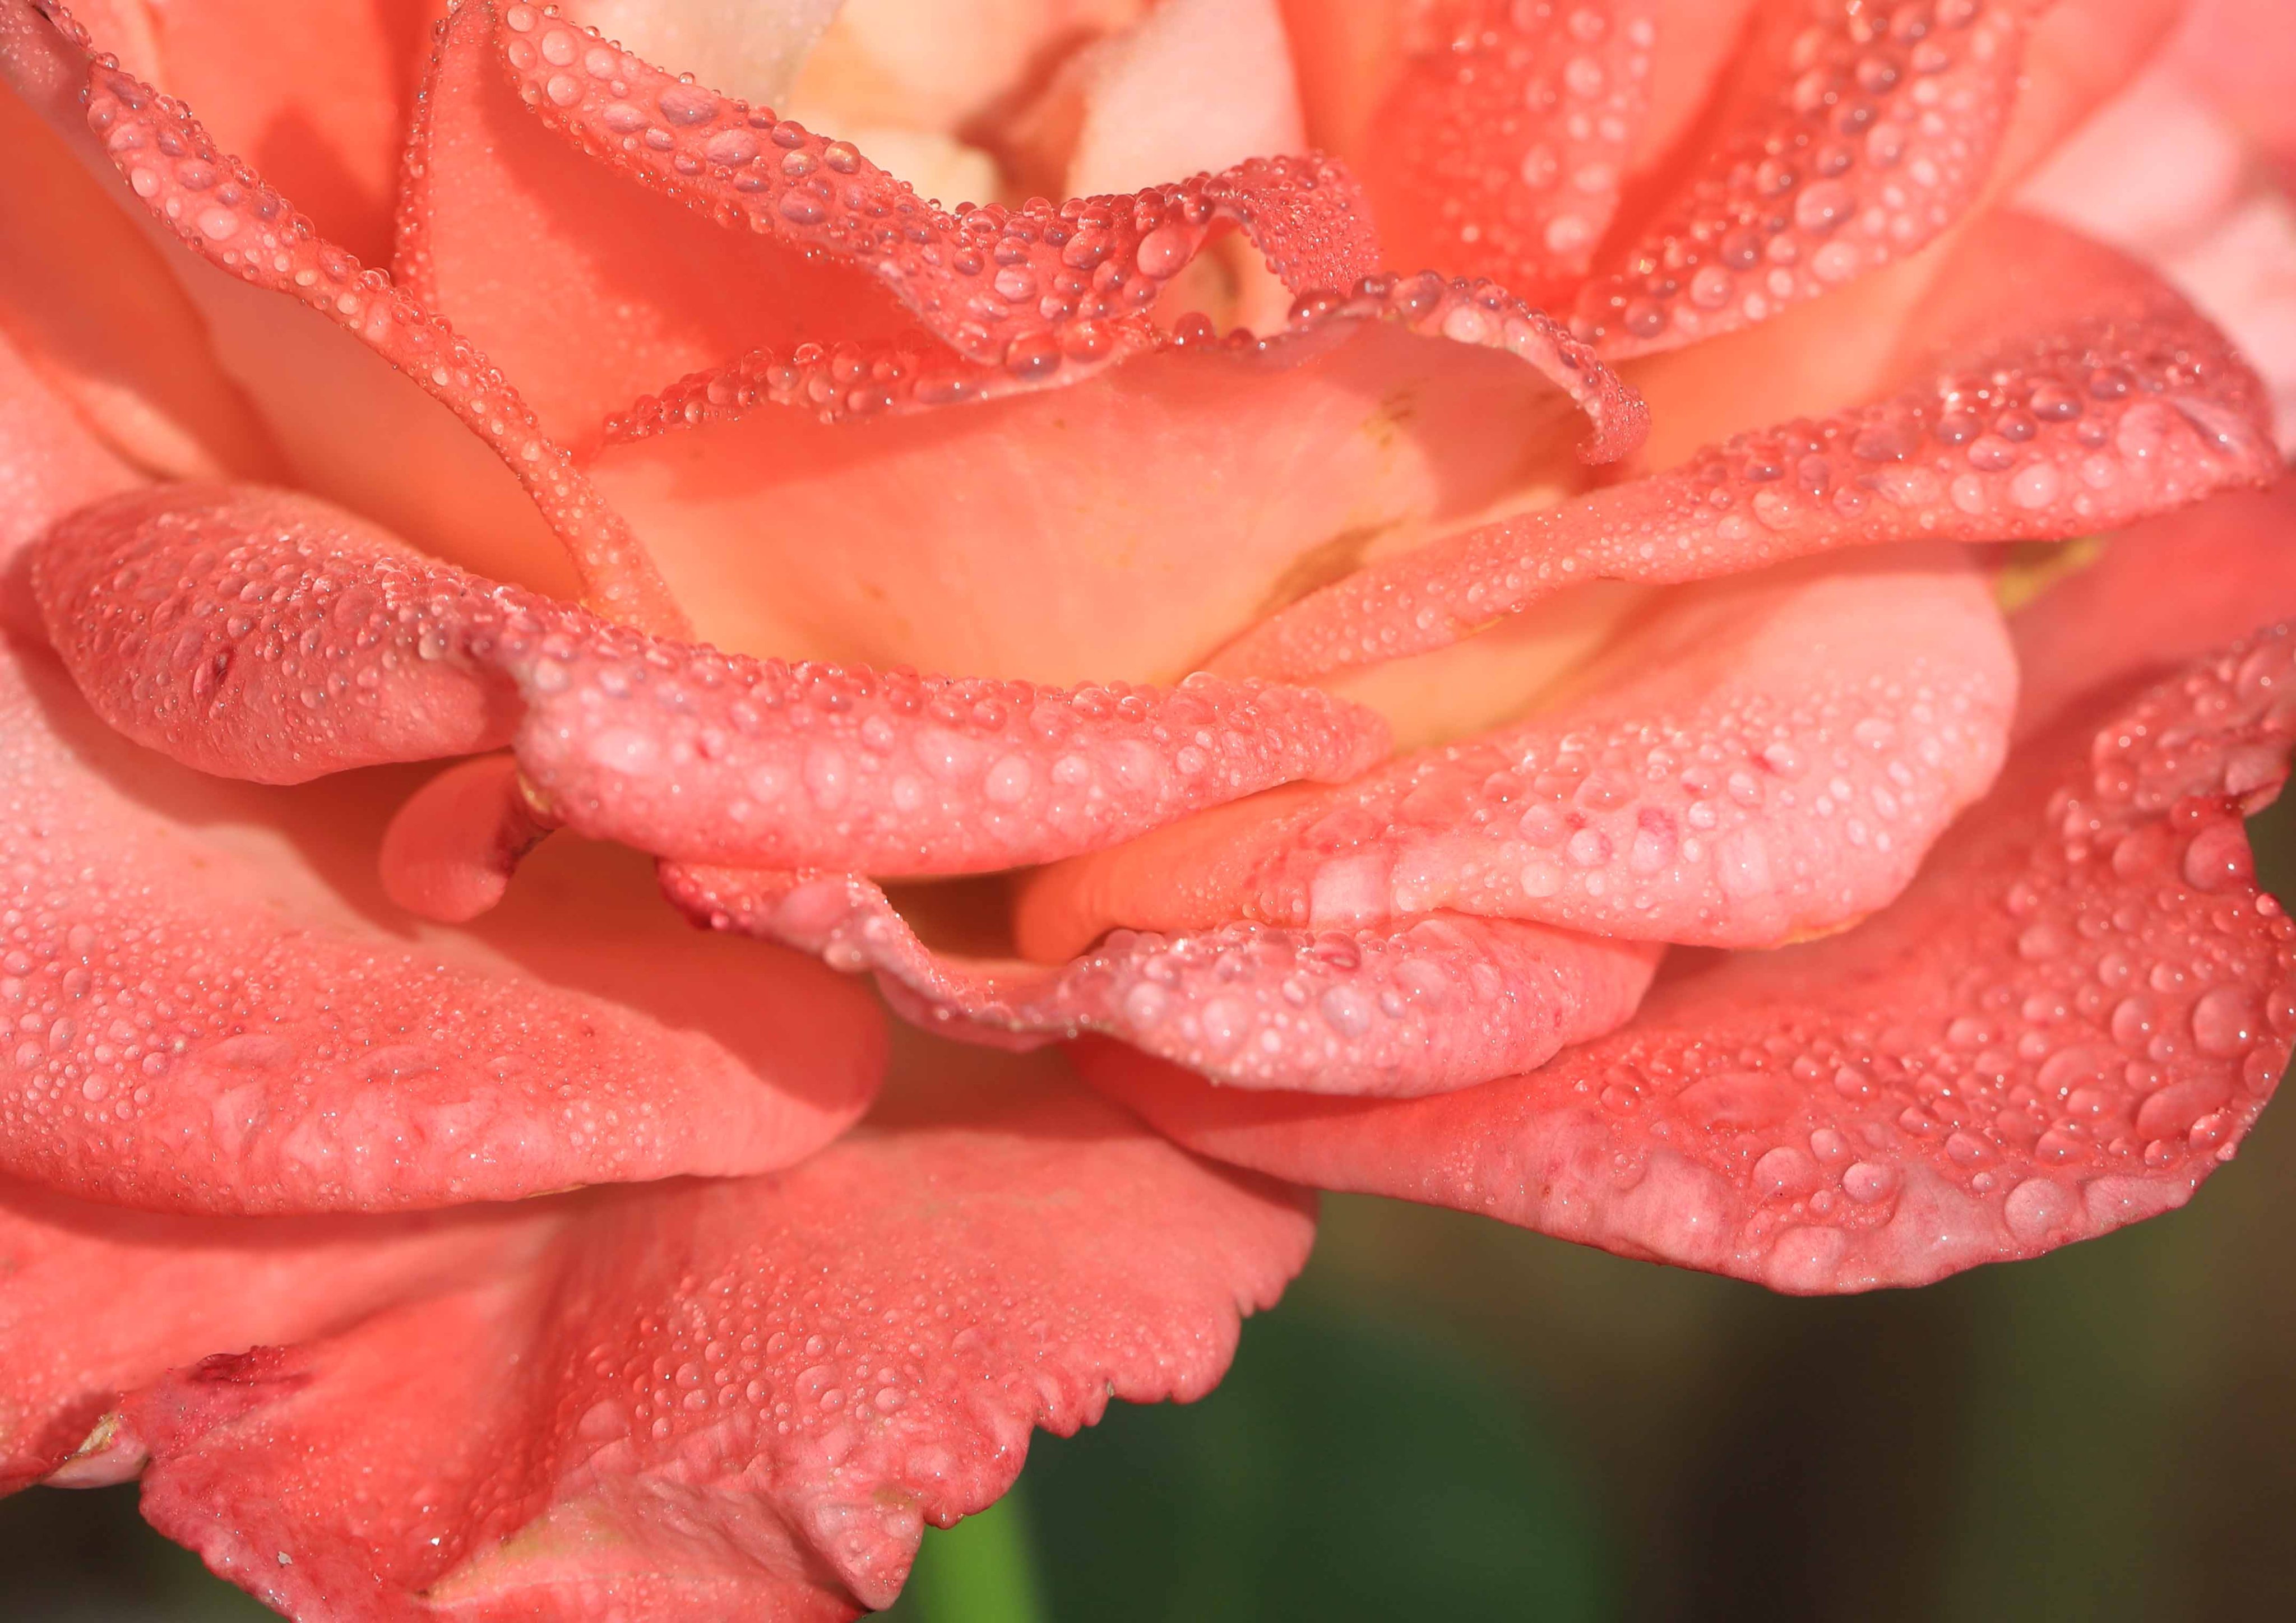 片柳弘史 Sur Twitter 教会の花壇に咲いた 上品なサーモンピンクの薔薇の花 宮沢賢治にちなんで名づけられた イーハトーブの風 という品種です T Co Vmnjw7goj3 Twitter